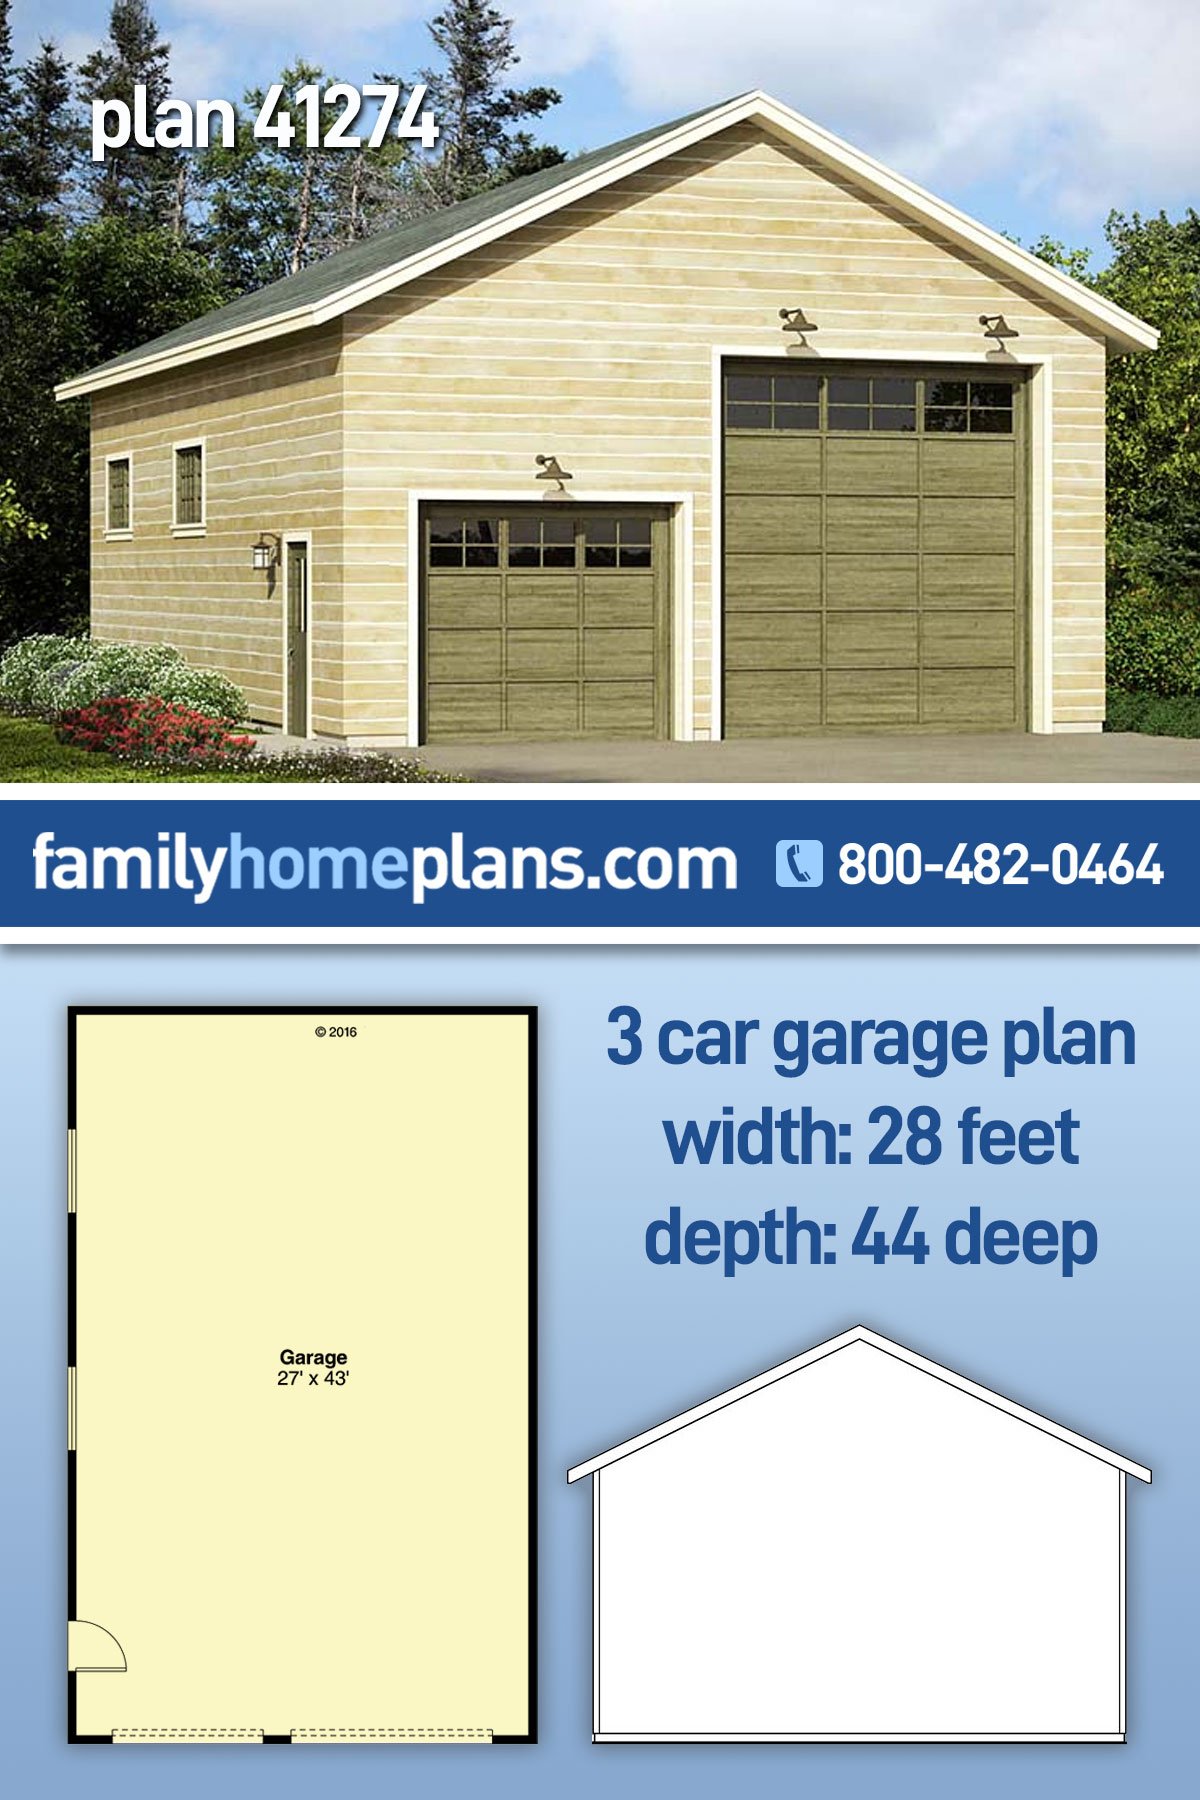 Garage Plan 41274 - 3 Car Garage